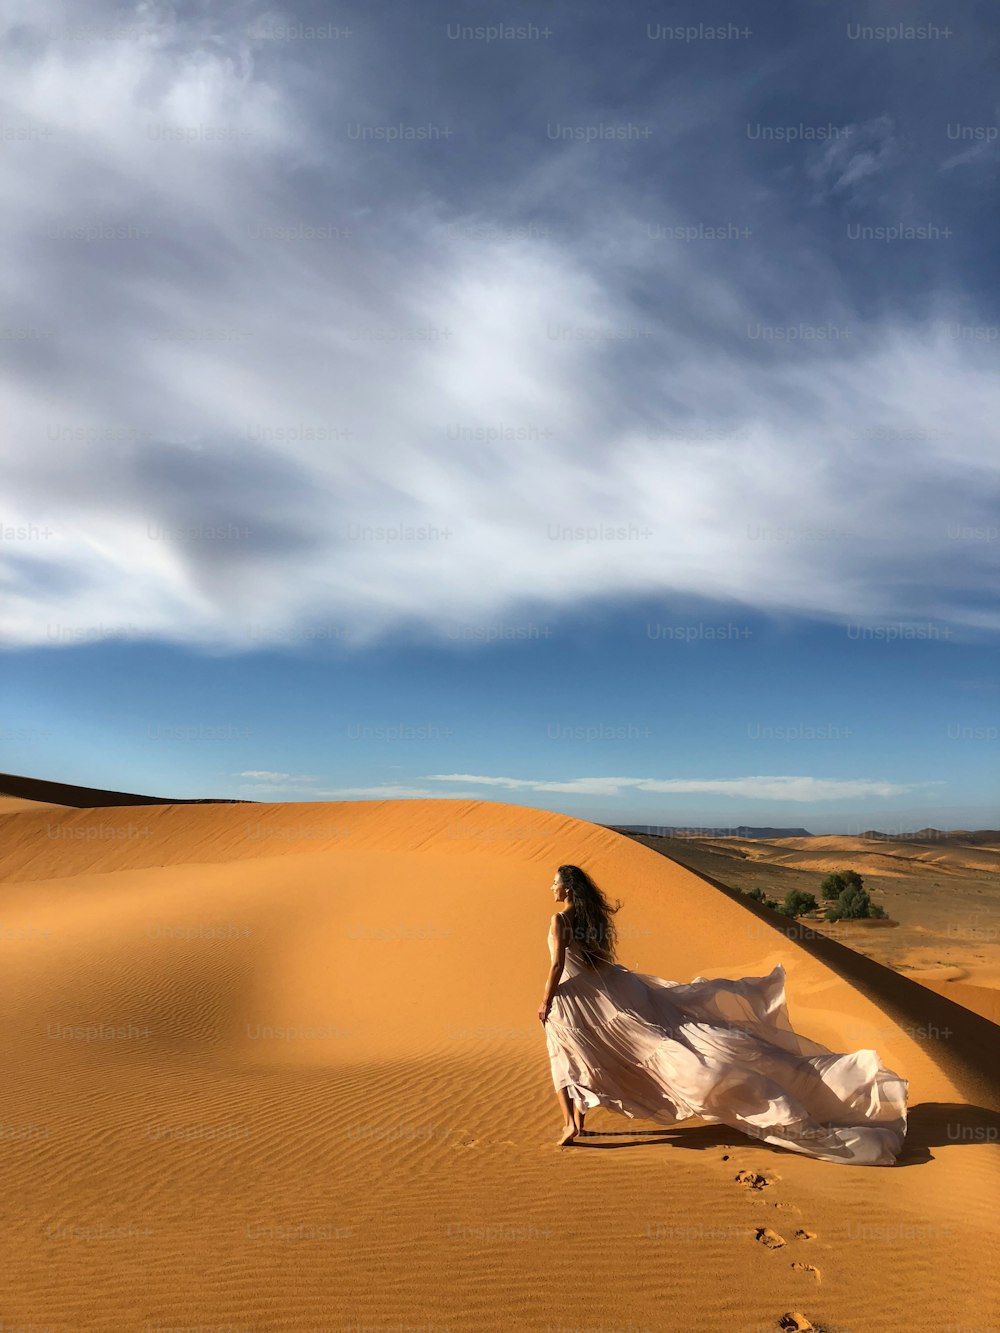 놀라운 실크 웨딩 드레스를 입은 여자는 일몰 빛에 사하라 사막 모래 언덕의 환상적인 전망을 가지고 있습니다. 아프리카 모로코의 풍경.